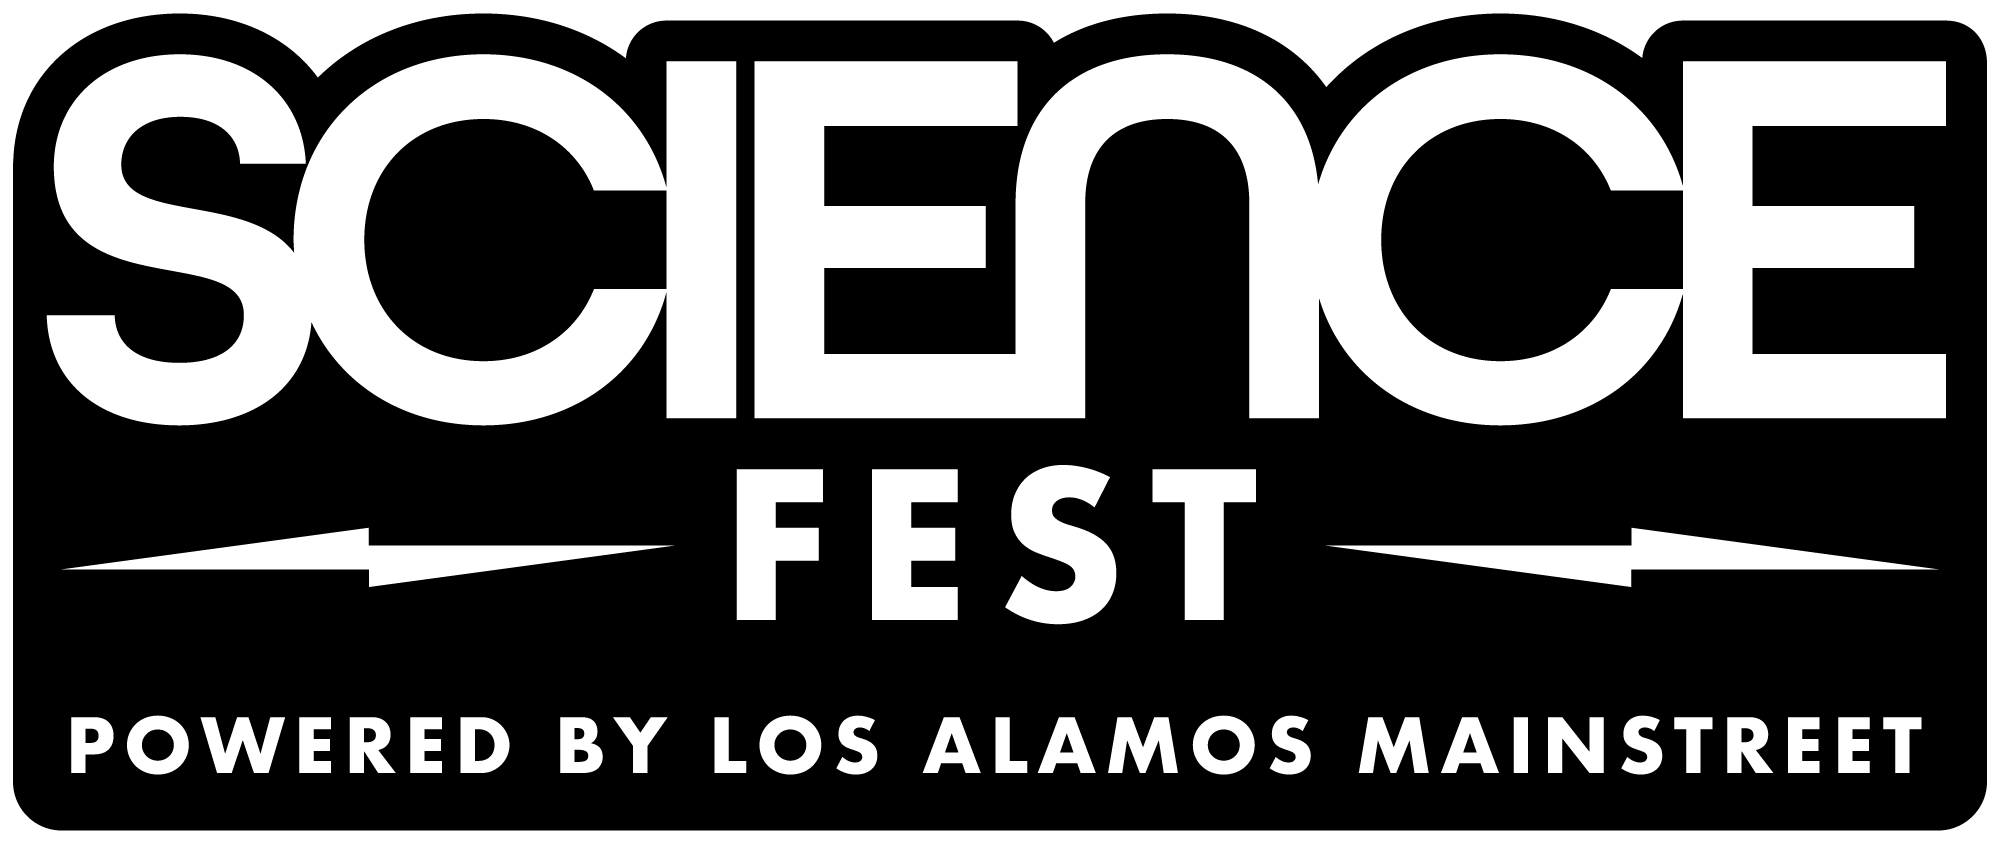 Visit Los Alamos :: Los Alamos ScienceFest